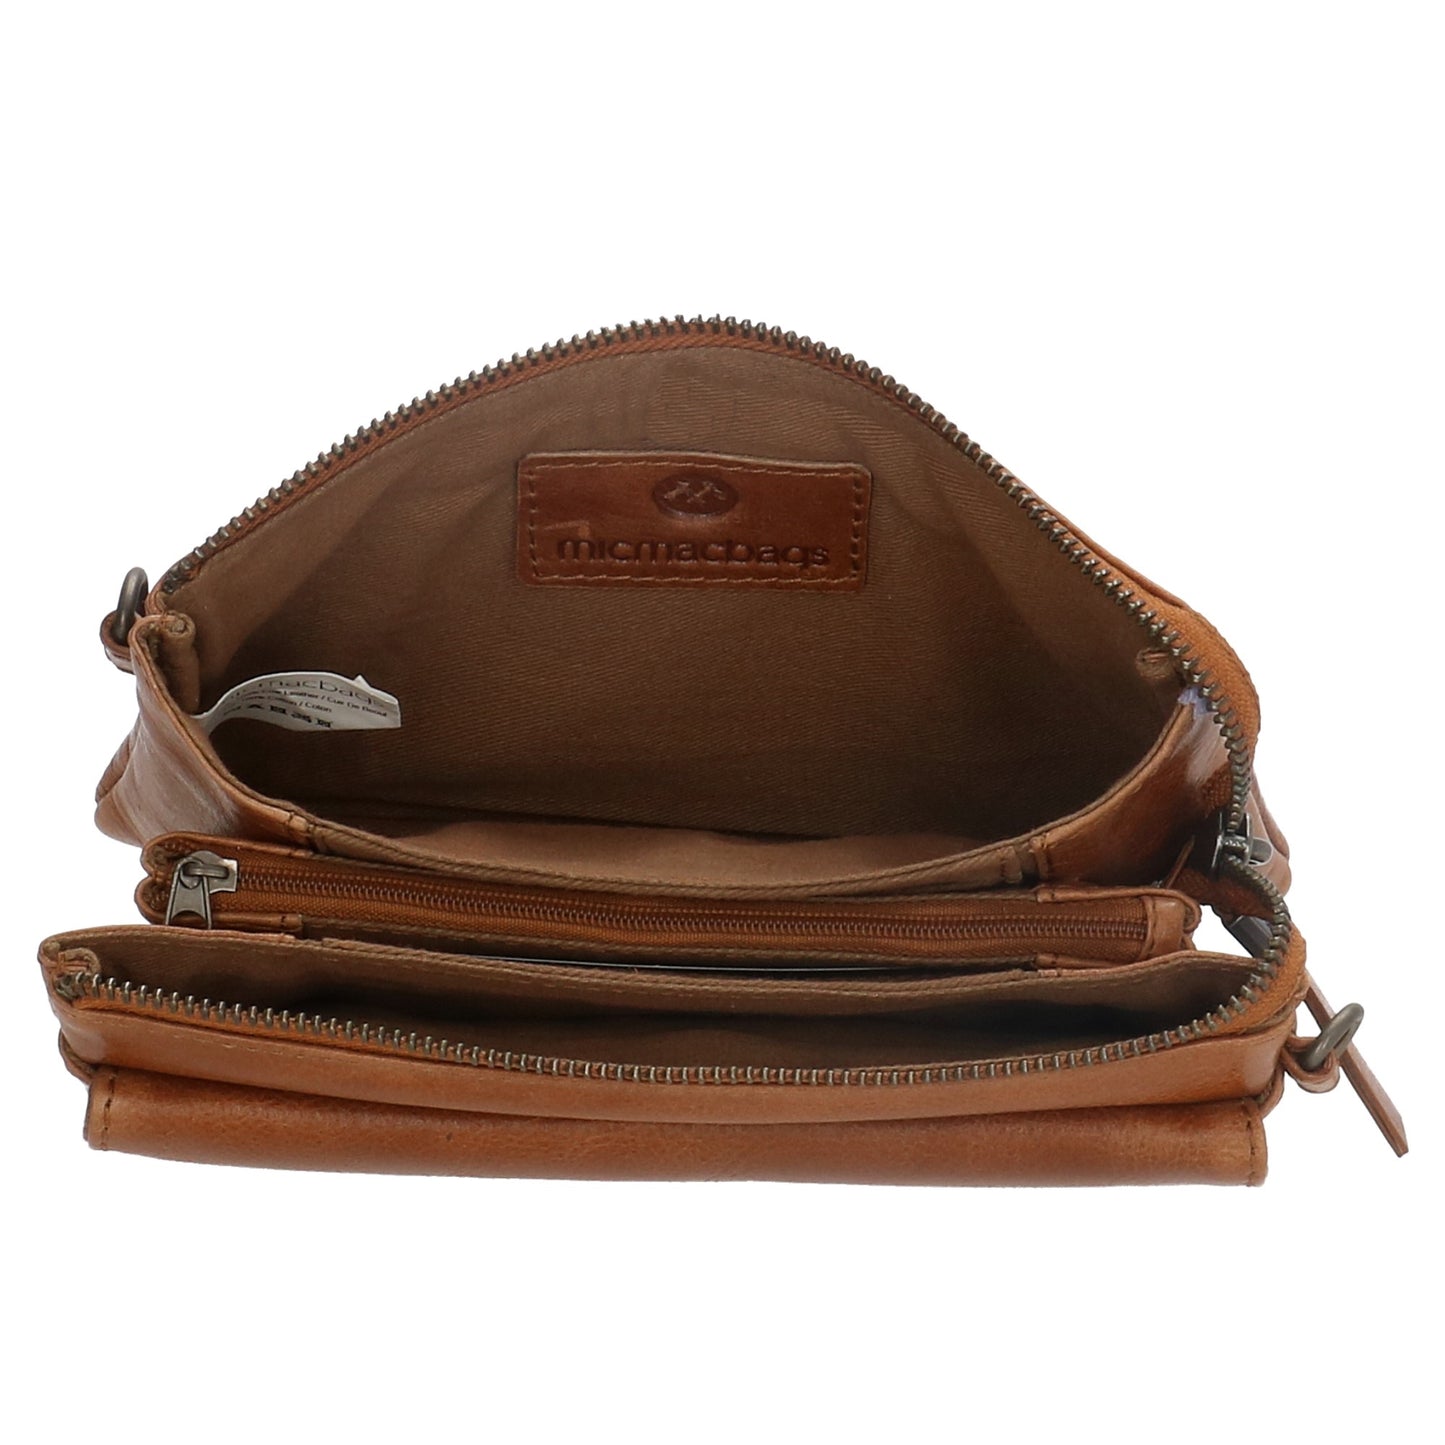 Umhängetasche| Mini Bag 20,5 x 12cm in Cognac aus Leder mit Vortasche